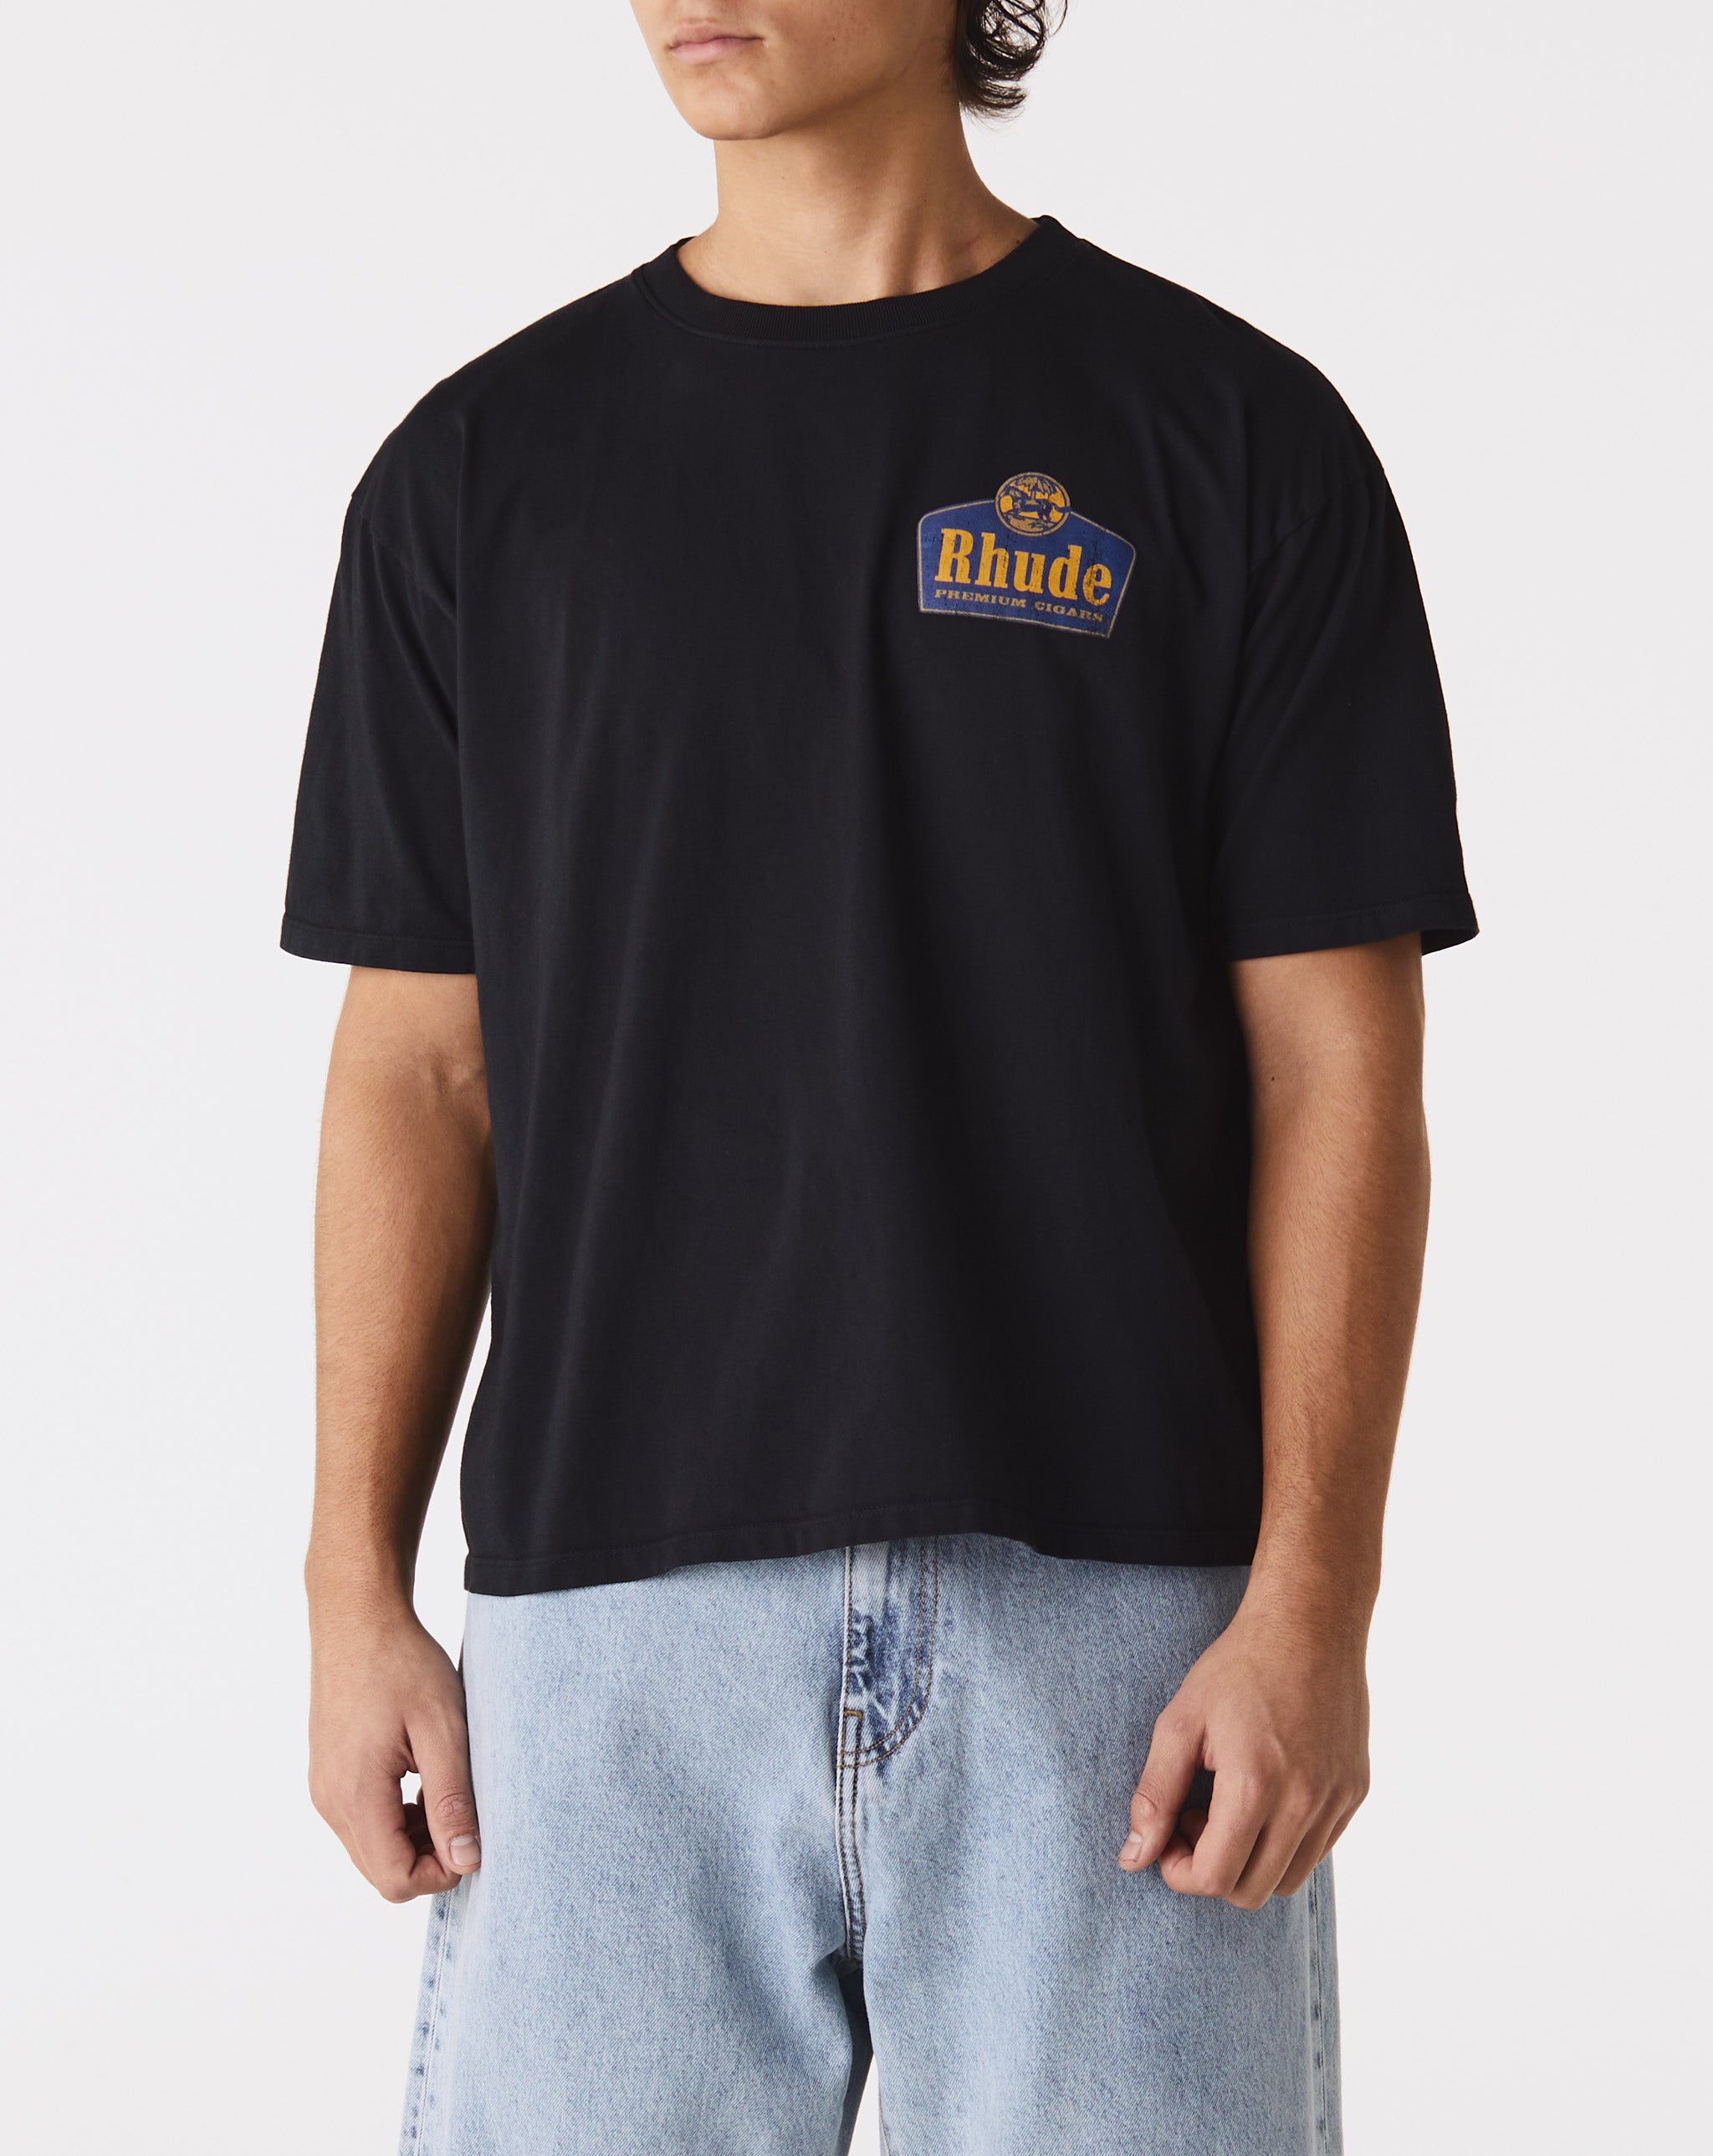 Rhude Grand Cru T-Shirt  - Cheap Urlfreeze Jordan outlet